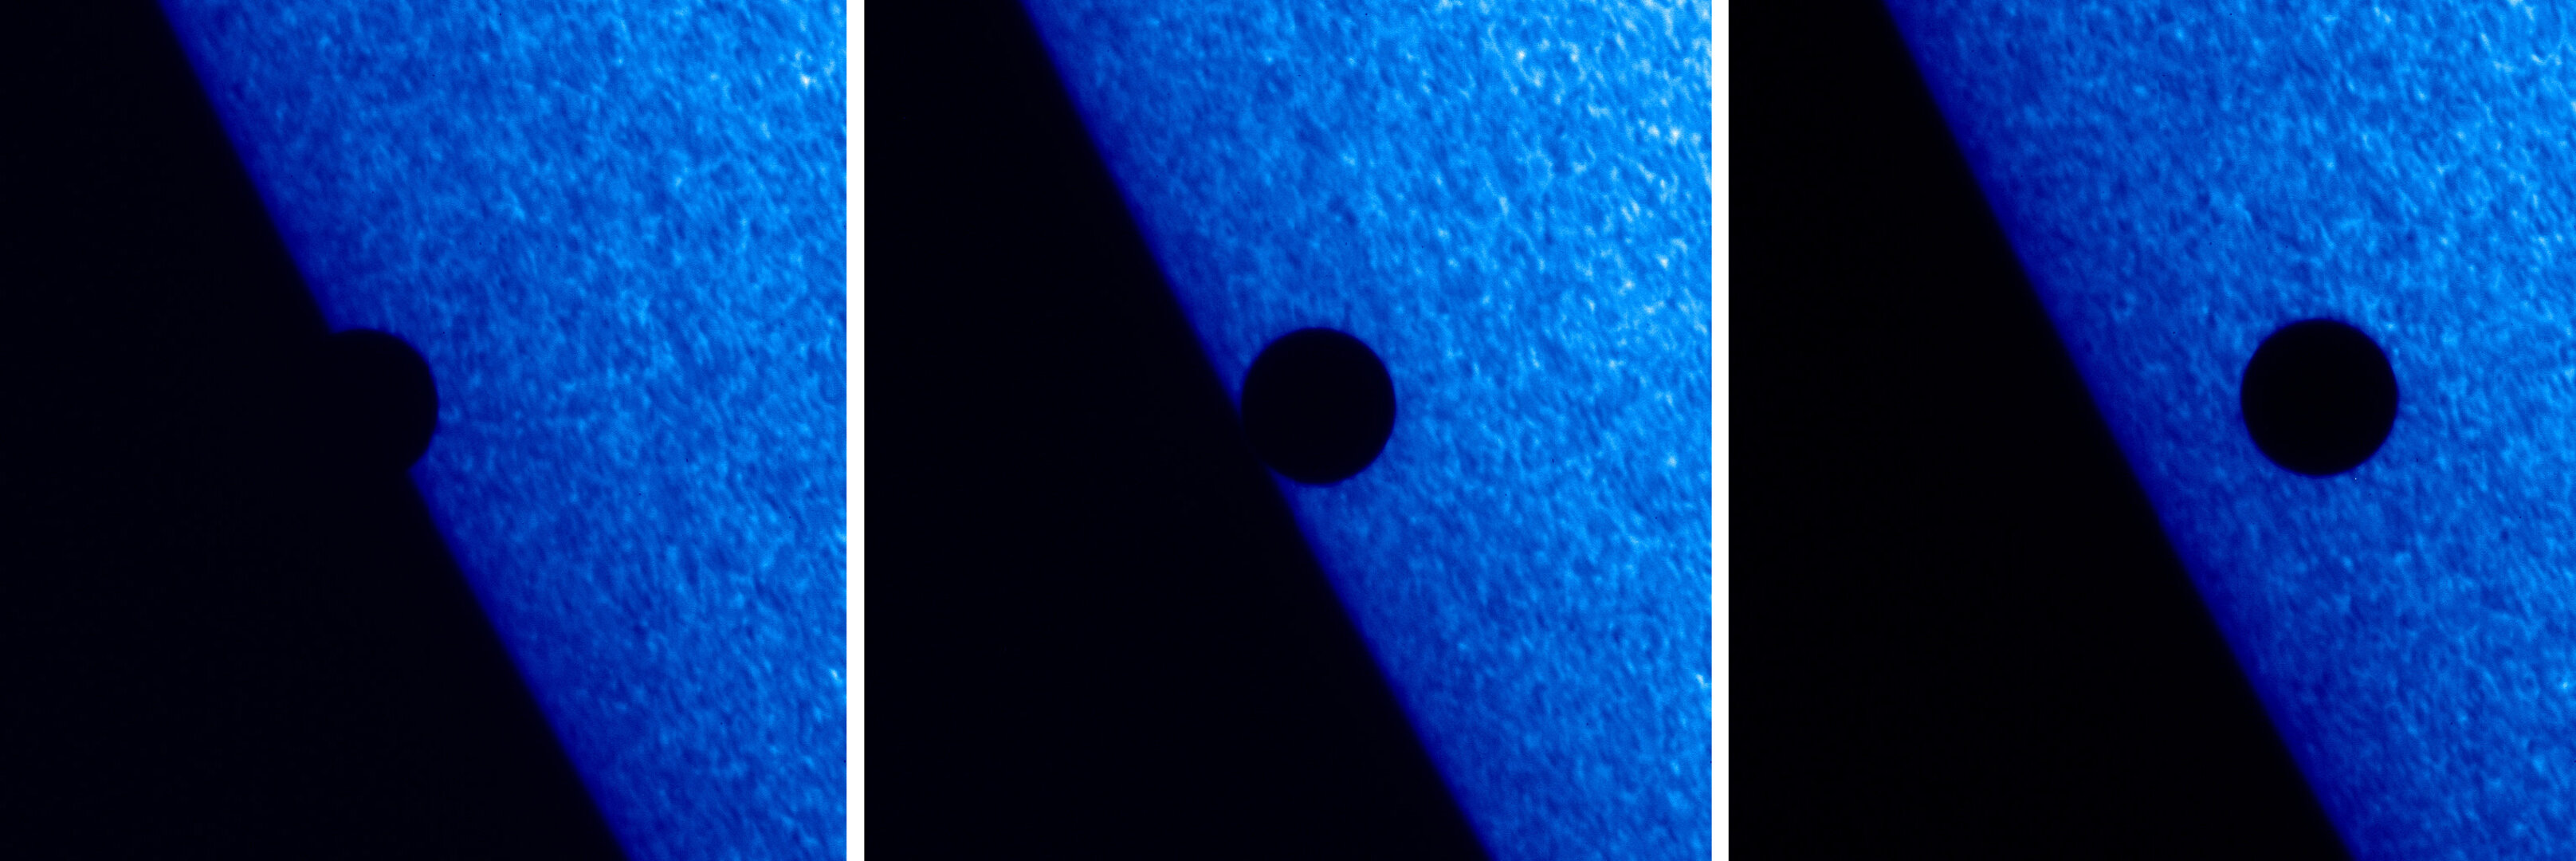 2006 Mercury transit as imaged by Hinode (Solar-B)